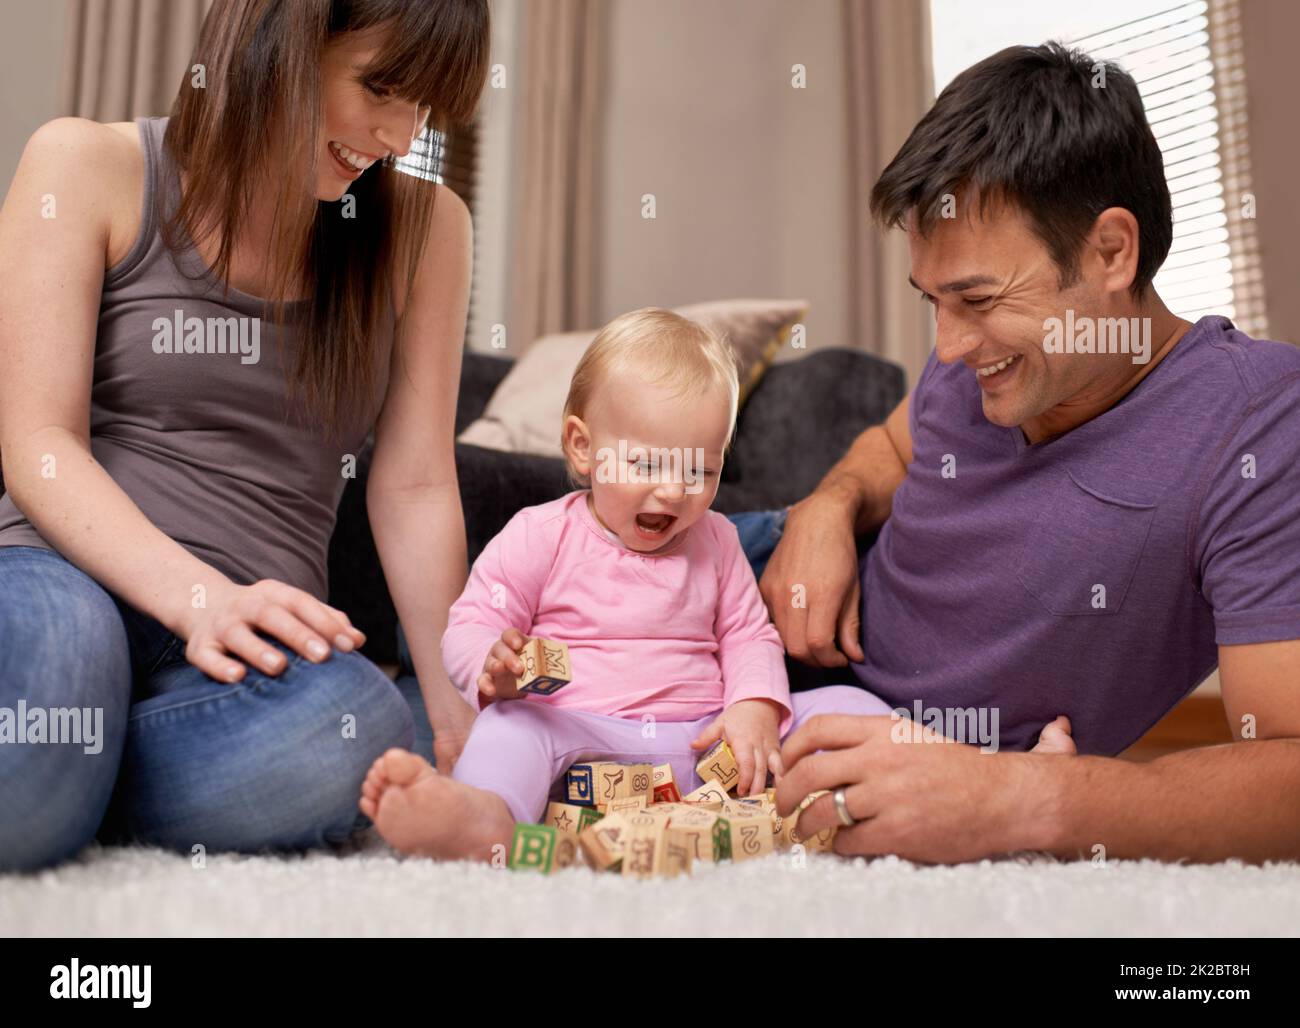 Aufgewachsen unter der Anleitung ihrer Eltern. Aufnahme eines jungen Paares, das ihre kleine Tochter beim Spielen beobachtete. Stockfoto